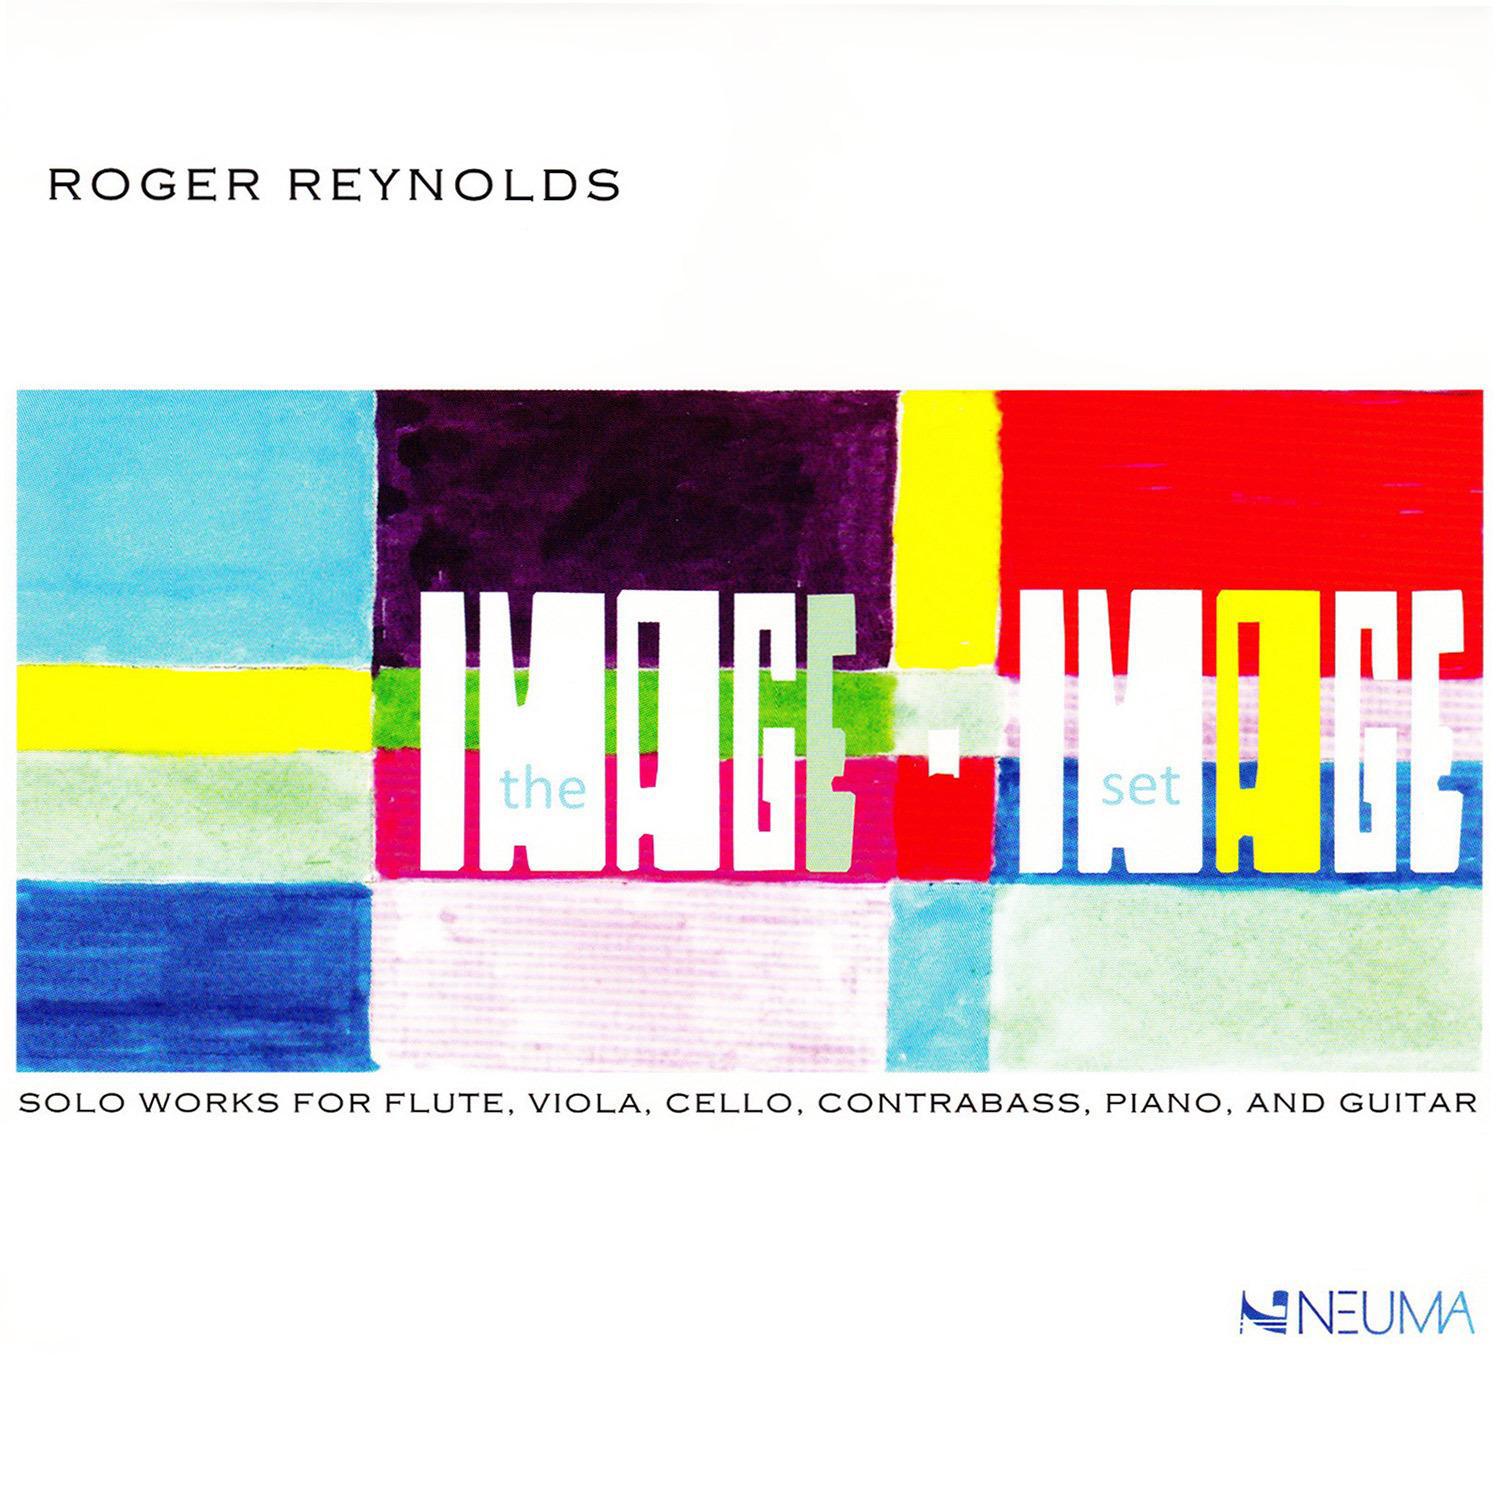 Roger Reynolds - imAge-guitar